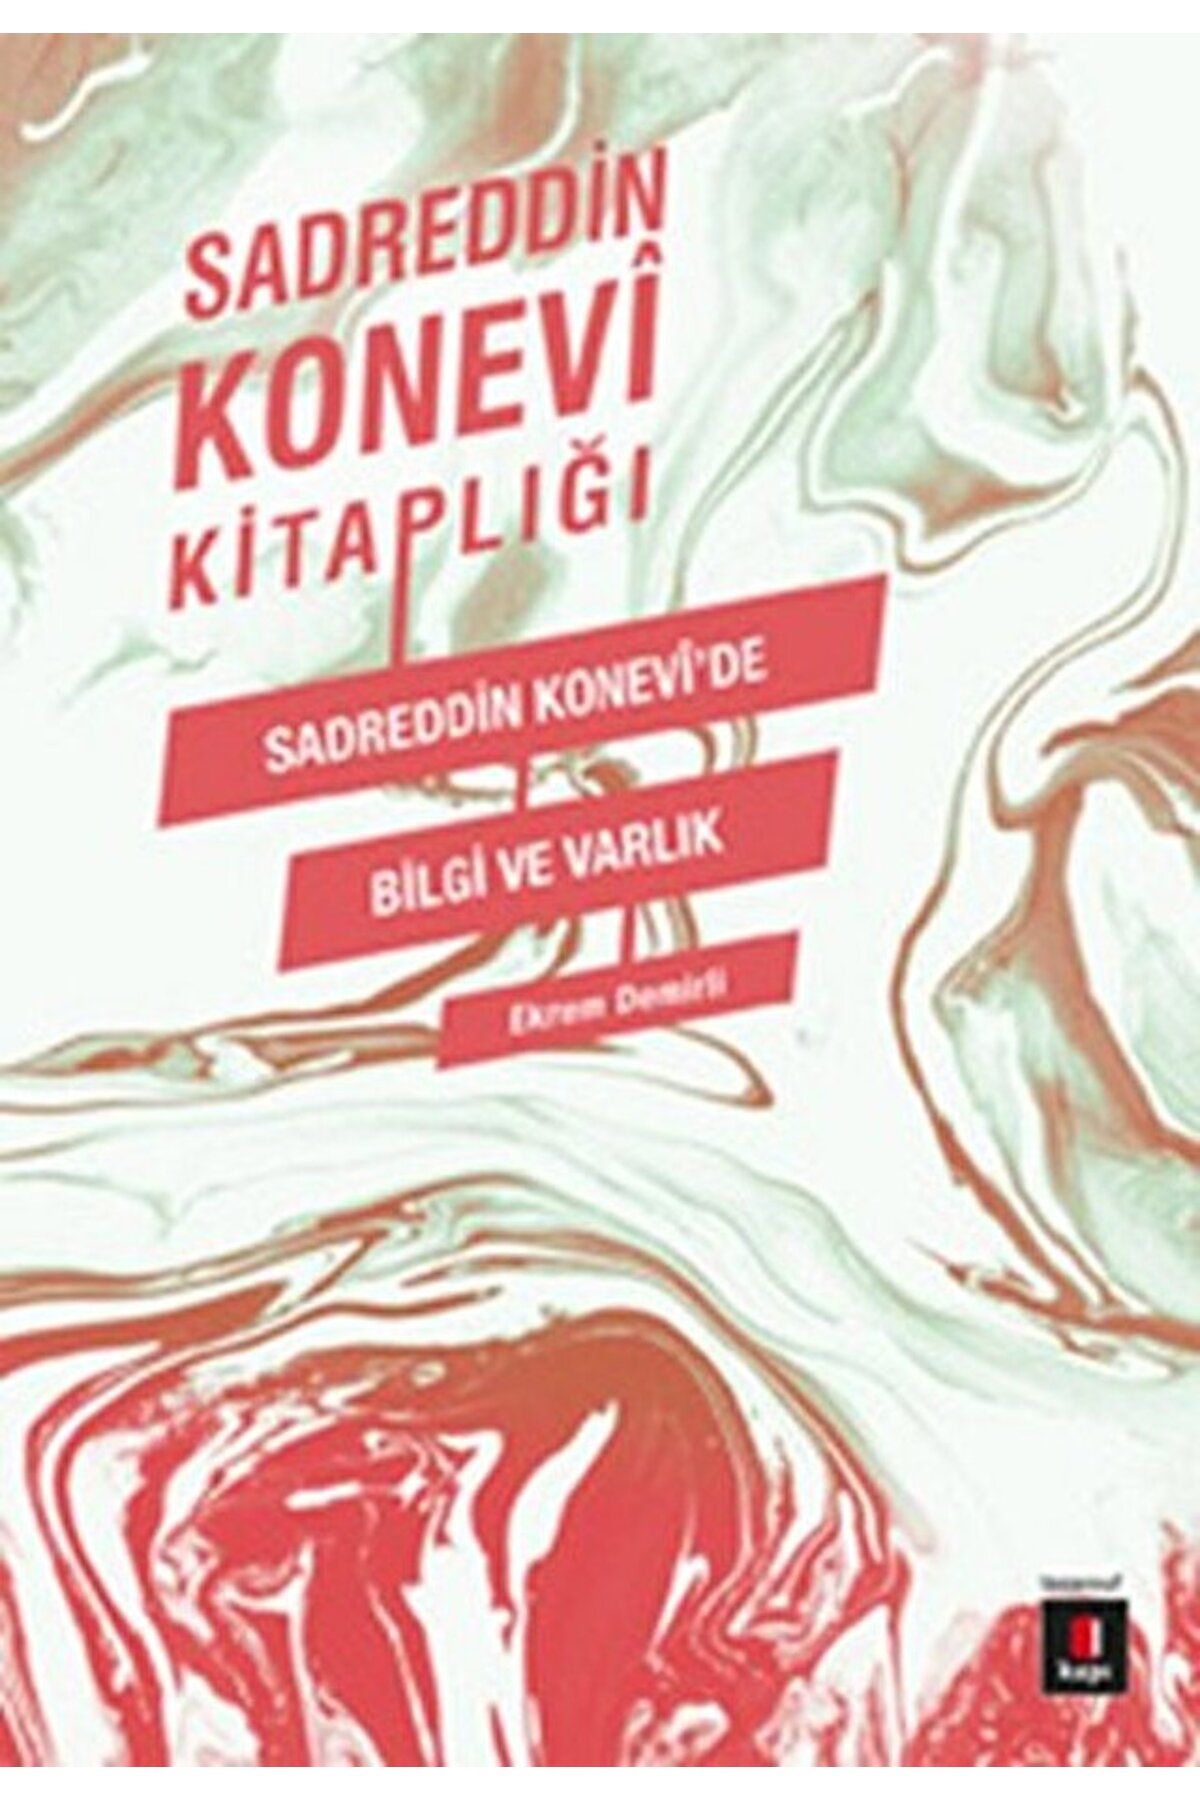 Kapı Yayınları Sadreddin Konevi Kitaplığı / Sadreddin Konevi'de Bilgi ve Varlık